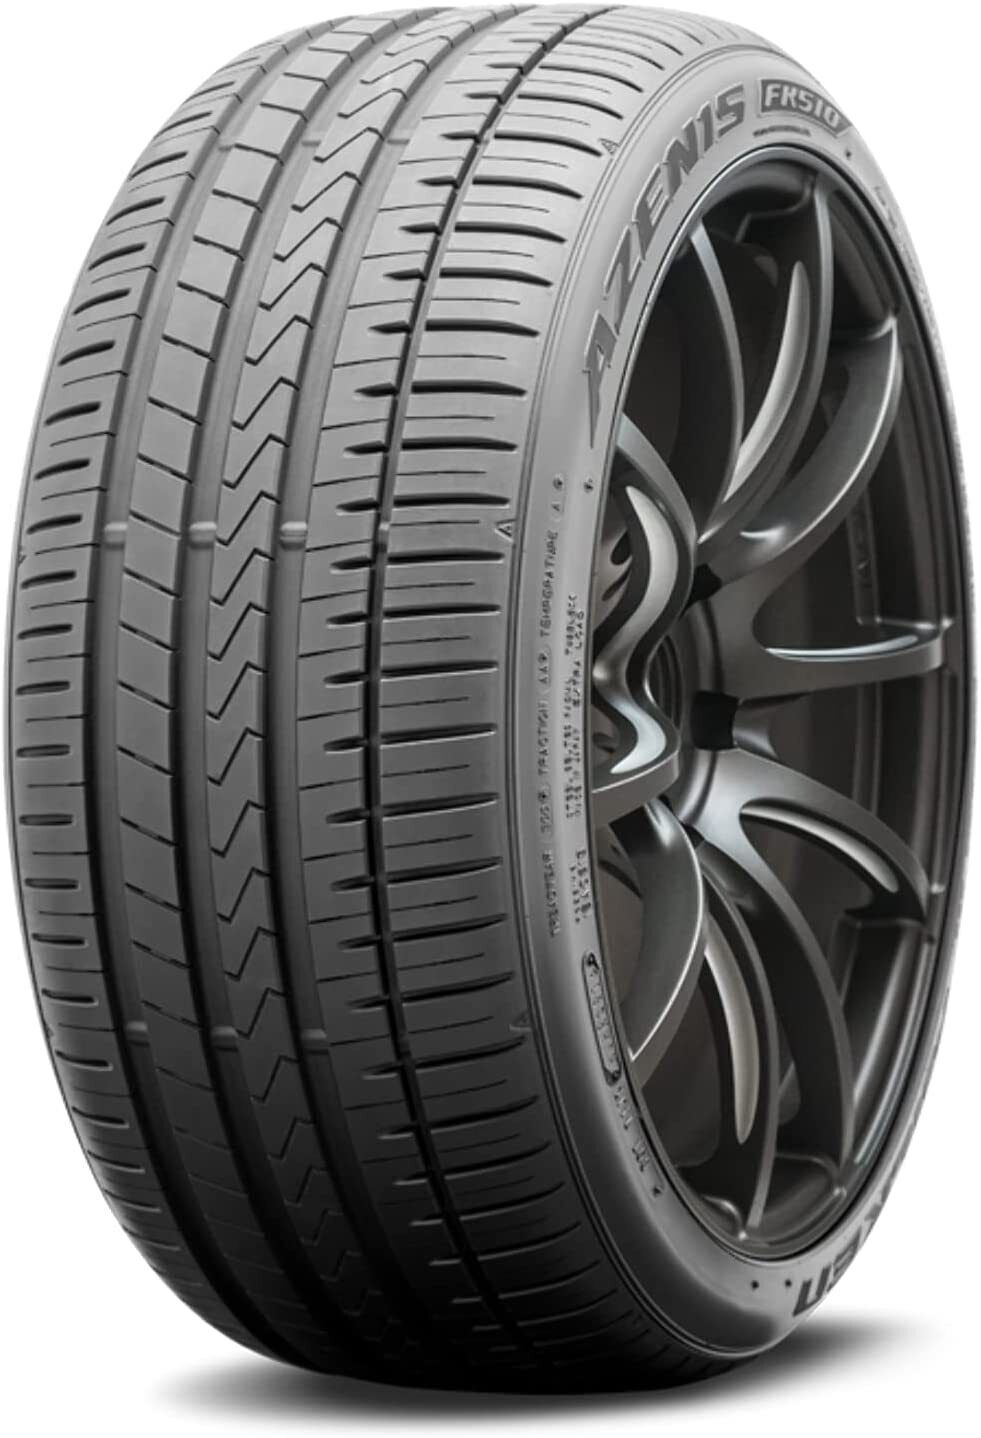 Falken Azenis FK510 255/35ZR19 XL 2553519 255 35 19 High Performance Tire